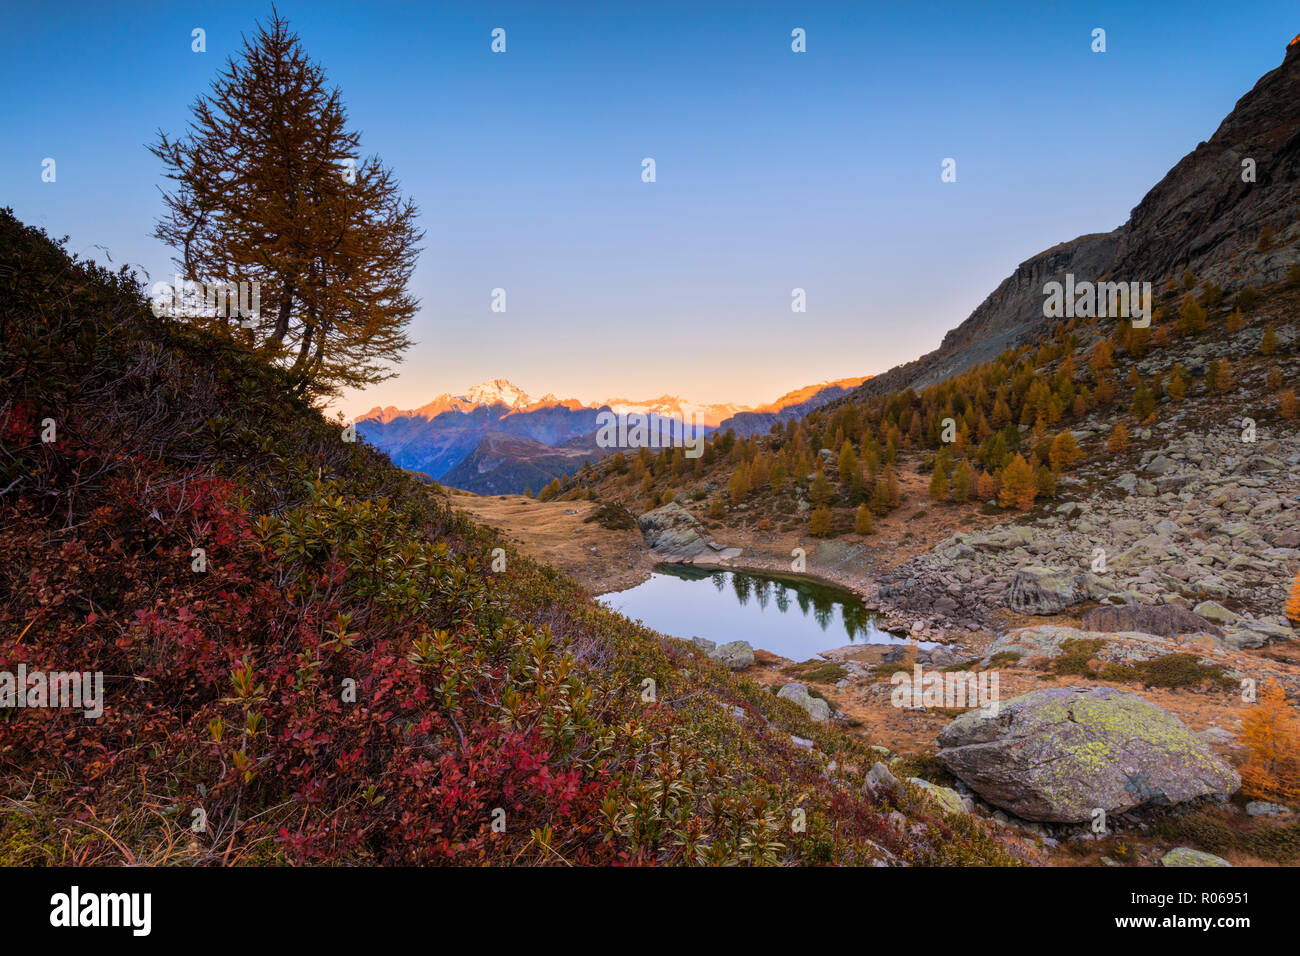 Herbstlicher Sonnenaufgang am Monte Disgrazia und Seen von Campagneda, Valmalenco, Veltlin Sondrio Provinz, Lombardei, Italien, Europa Stockfoto